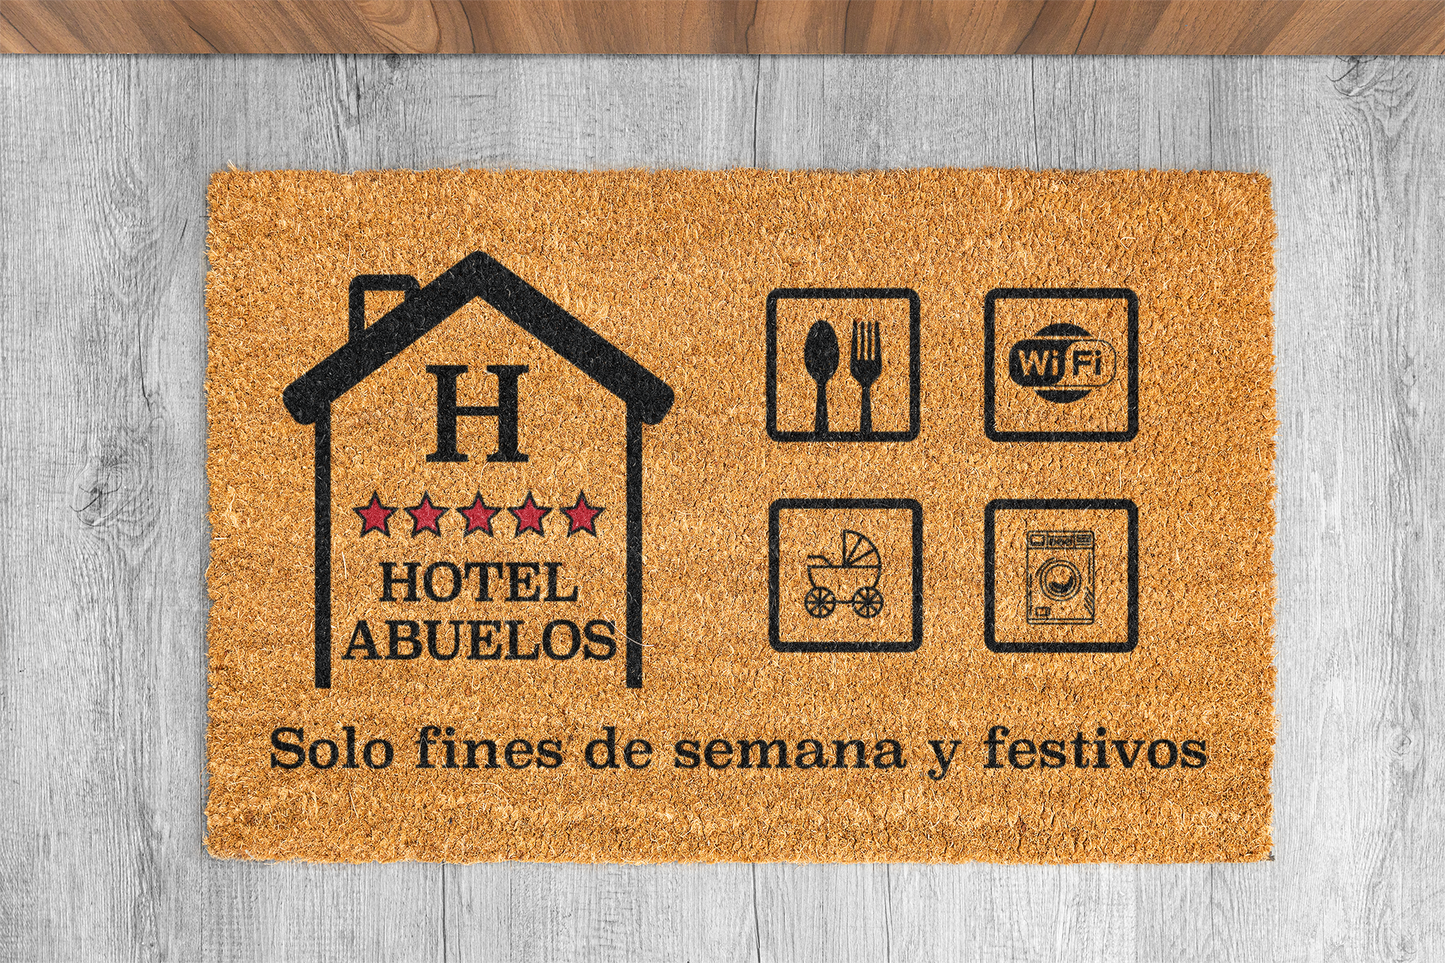 Felpudo "Hotel Abuelos. Solo fines de semana y festivos" 33x60cm. 100% fibra de coco. Eco-friendly.